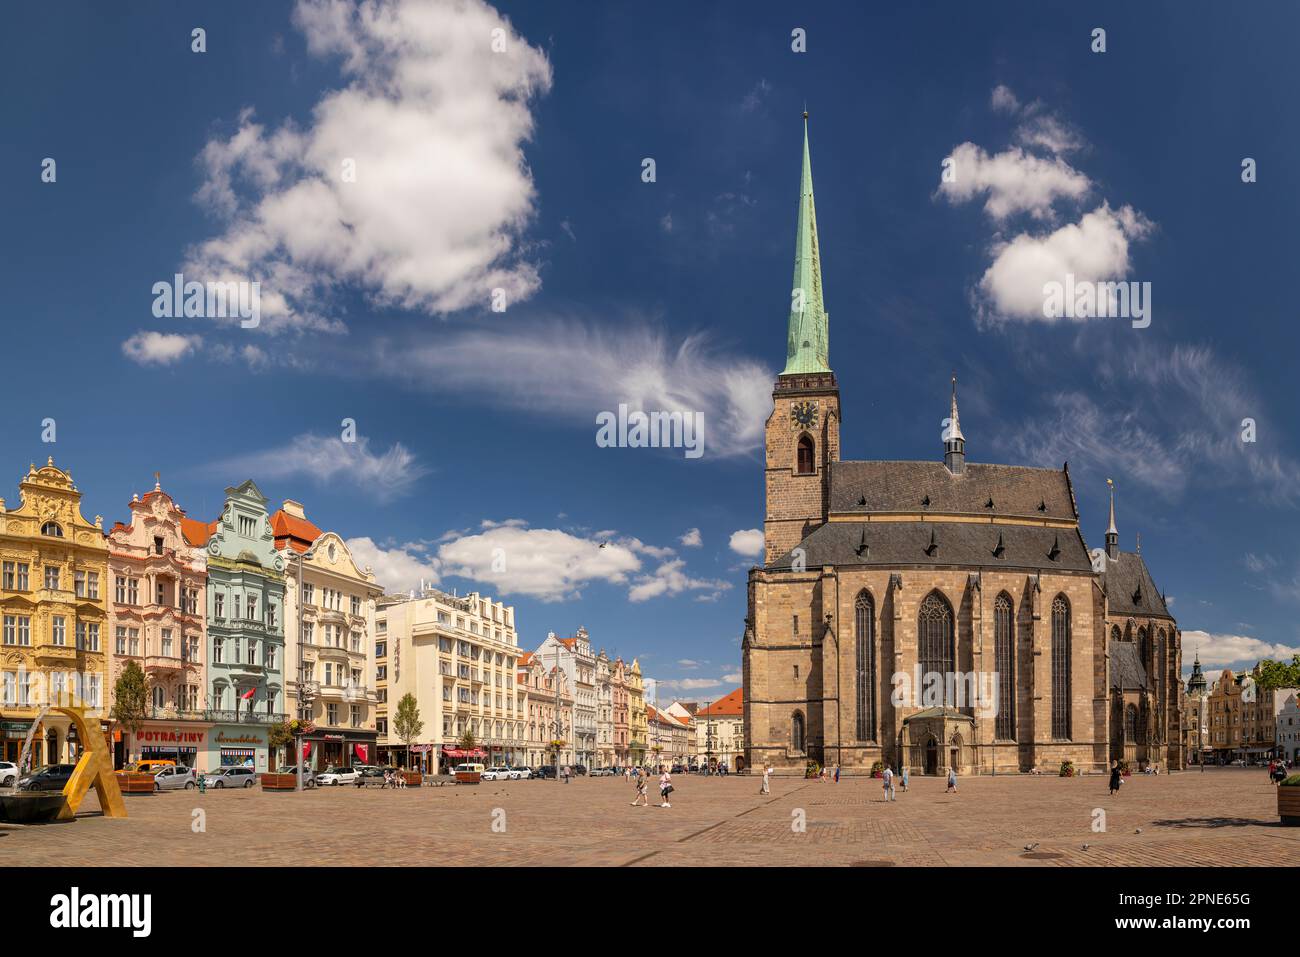 PILSEN, TSCHECHISCHE REPUBLIK, EUROPA - die Kathedrale von St. Bartholomew, eine gotische Kirche auf dem Hauptplatz von Pilsen. Stockfoto